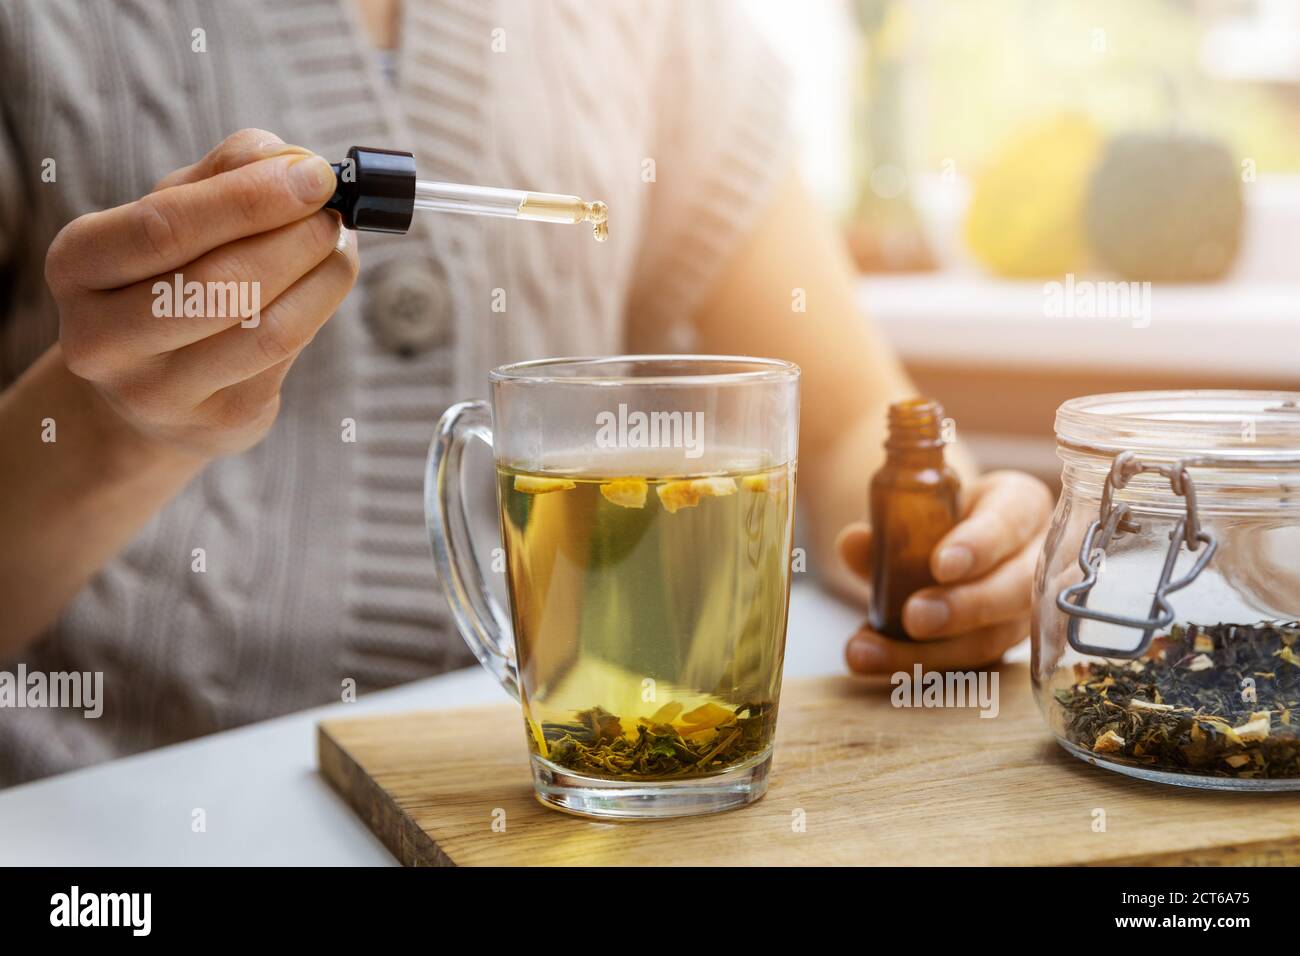 suplementos dietéticos y vitaminas - mujer agregando gota de aceite cbd en taza de té con pipeta Foto de stock